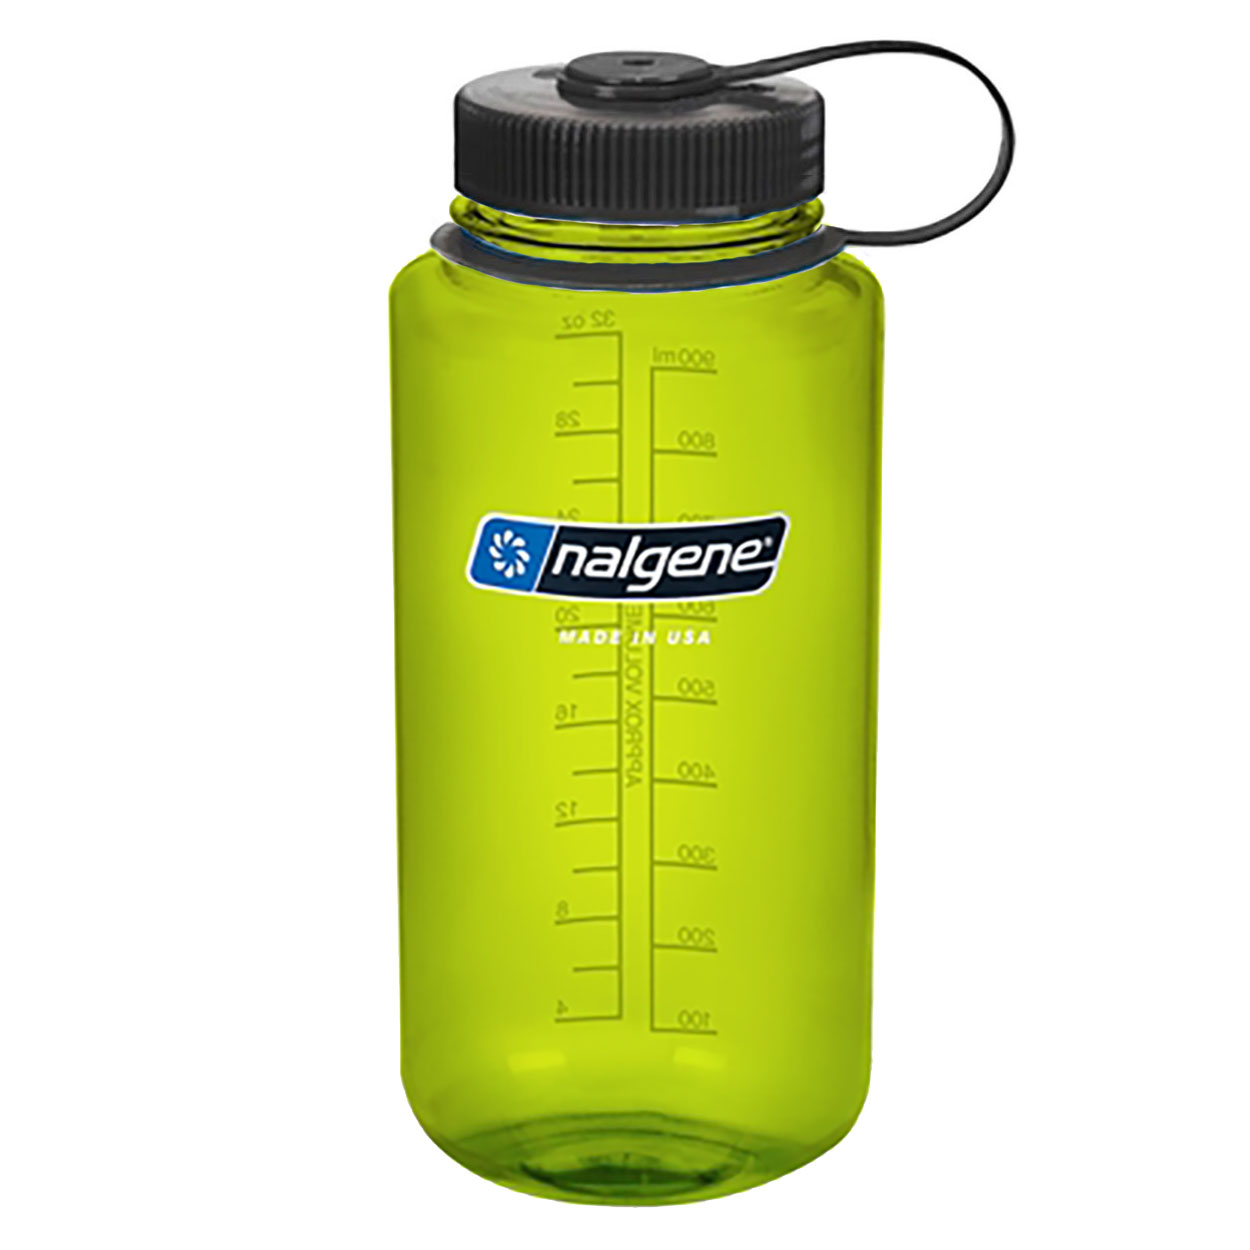 Nalgene Wide Mouth Water Bottle, 32 oz Green w/ Black Cap